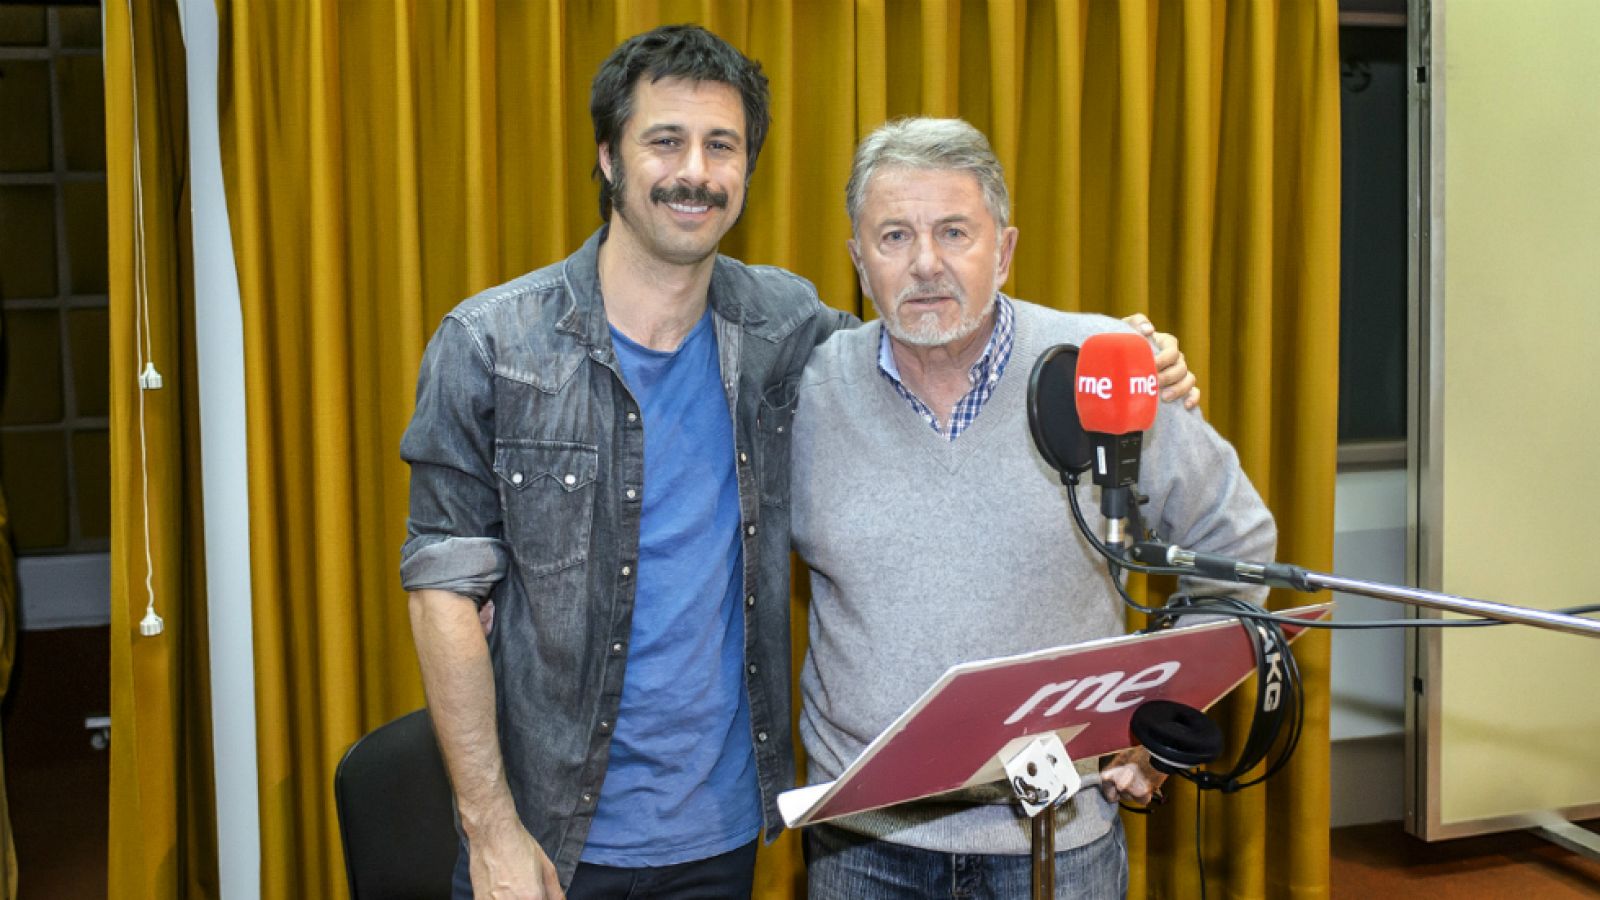 El Ministerio del Tiempo - Hugo Silva y Jaime Blanch protagonizan 'Una llamada a tiempo', la ficción sonora de la tercera temporada de 'El Ministerio del tiempo'